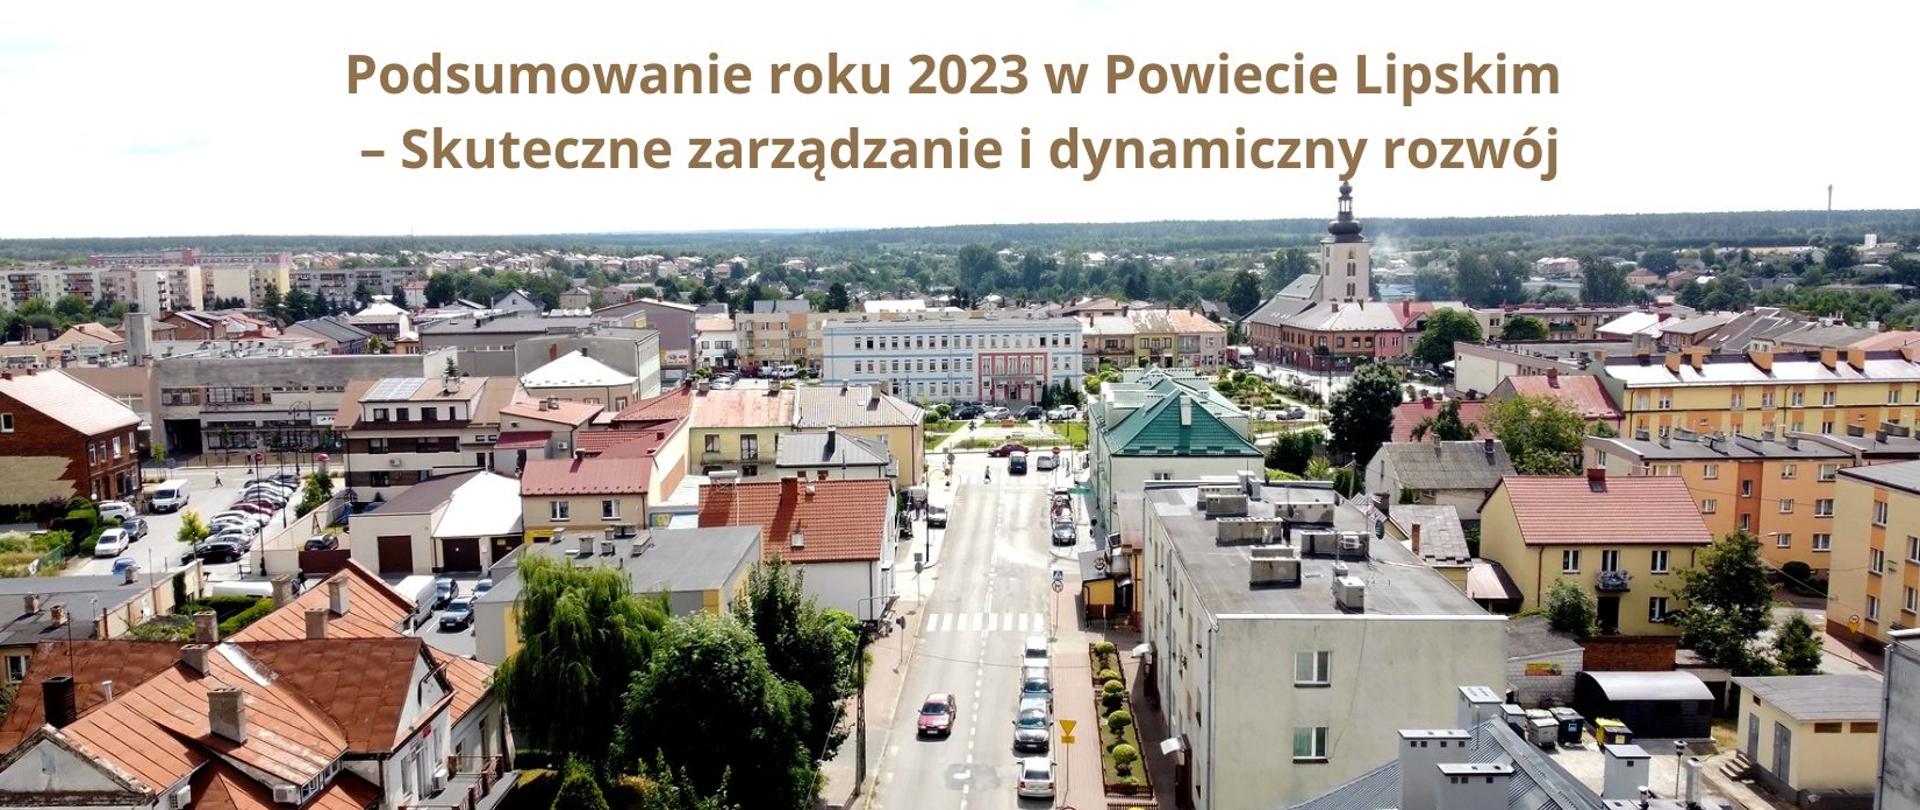 Panorama miasta Lipsko - ujęcie z drona. Na górze zdjęcia napis: Podsumowanie roku 2023 w Powiecie Lipskim – Skuteczne zarządzanie i dynamiczny rozwój